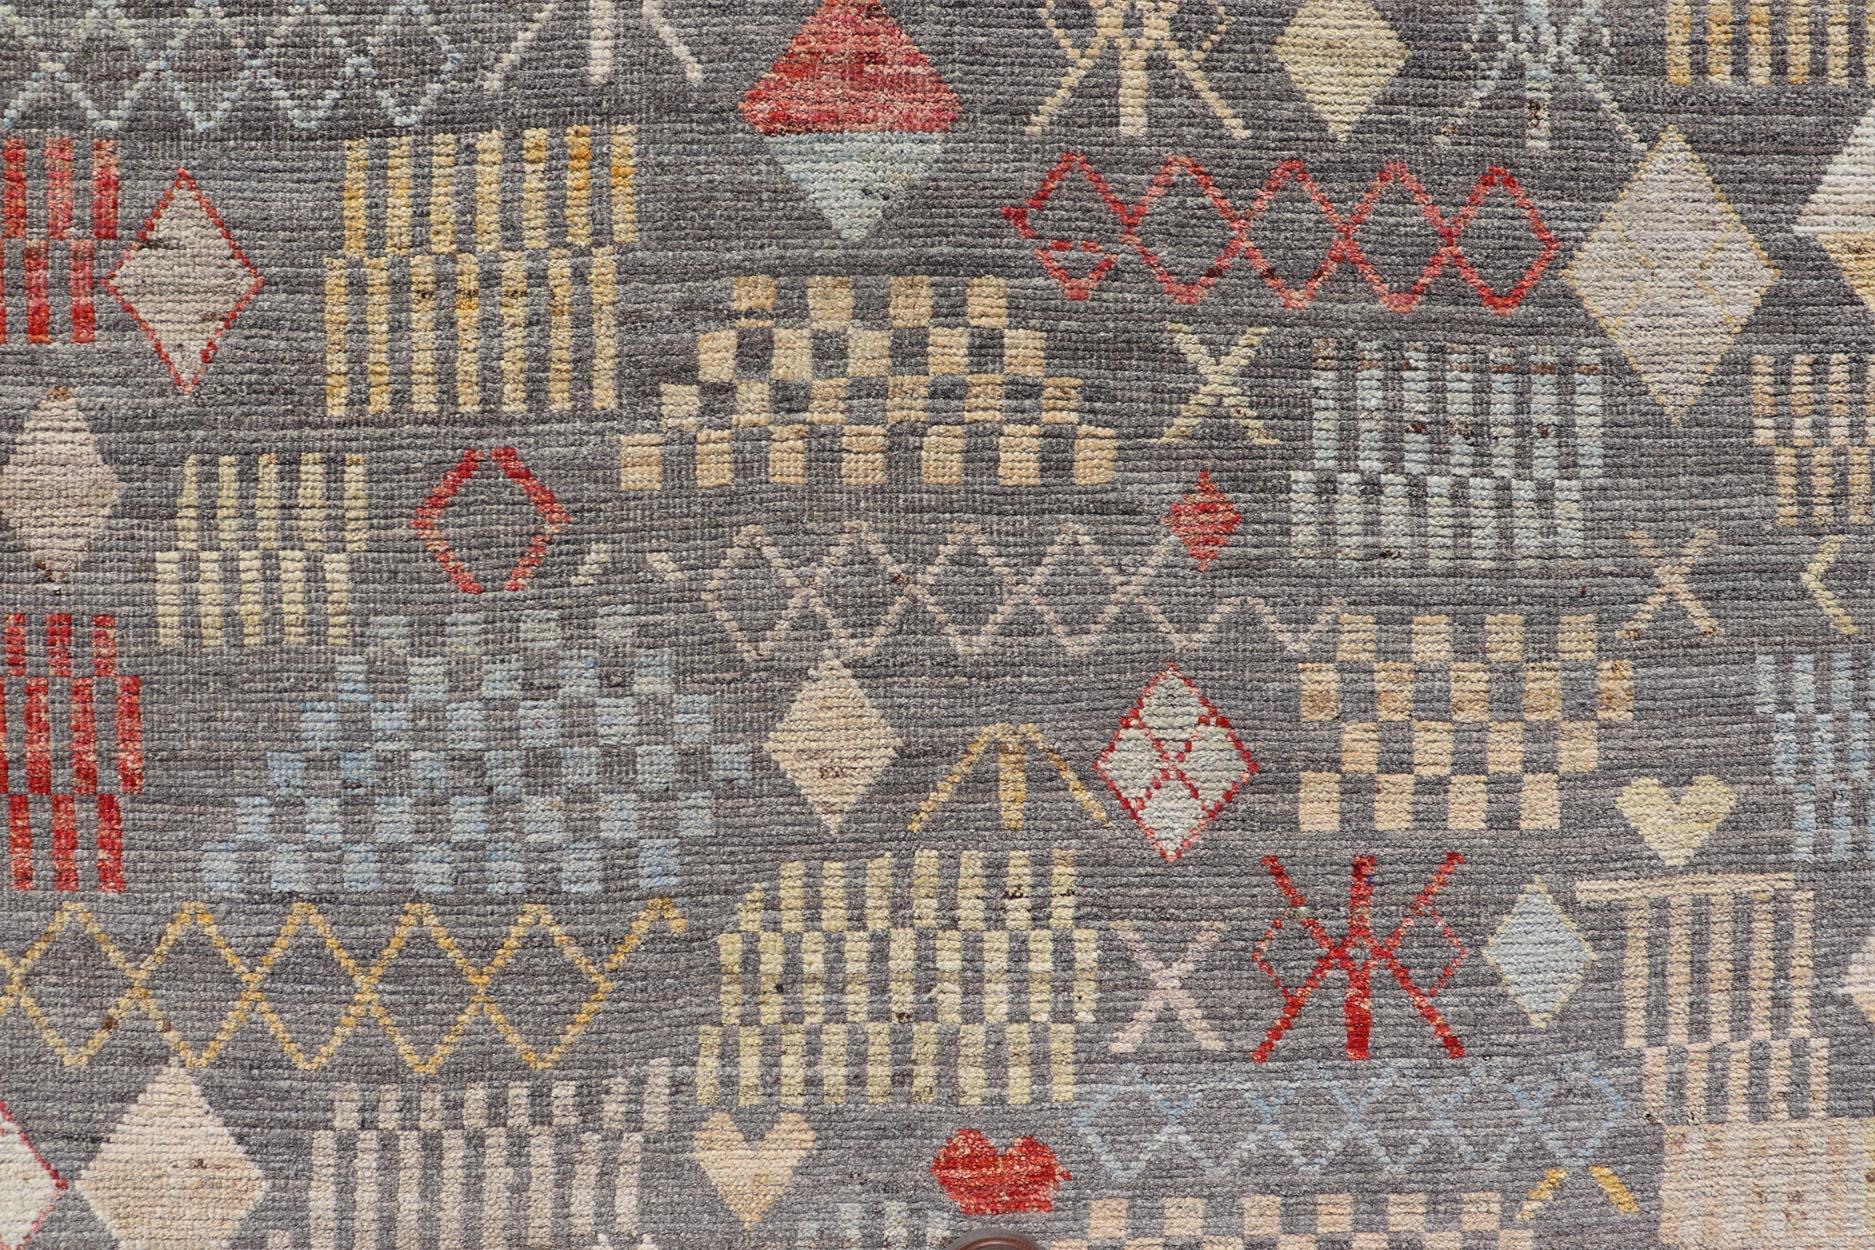 Dieser moderne, lässige Tribal-Teppich ist handgeknüpft. Der Teppich zeichnet sich durch ein modernes, subgeometrisches Allover-Muster aus, das mit verschiedenen mehrfarbigen Motiven angereichert ist. Dadurch passt dieser Teppich hervorragend zu